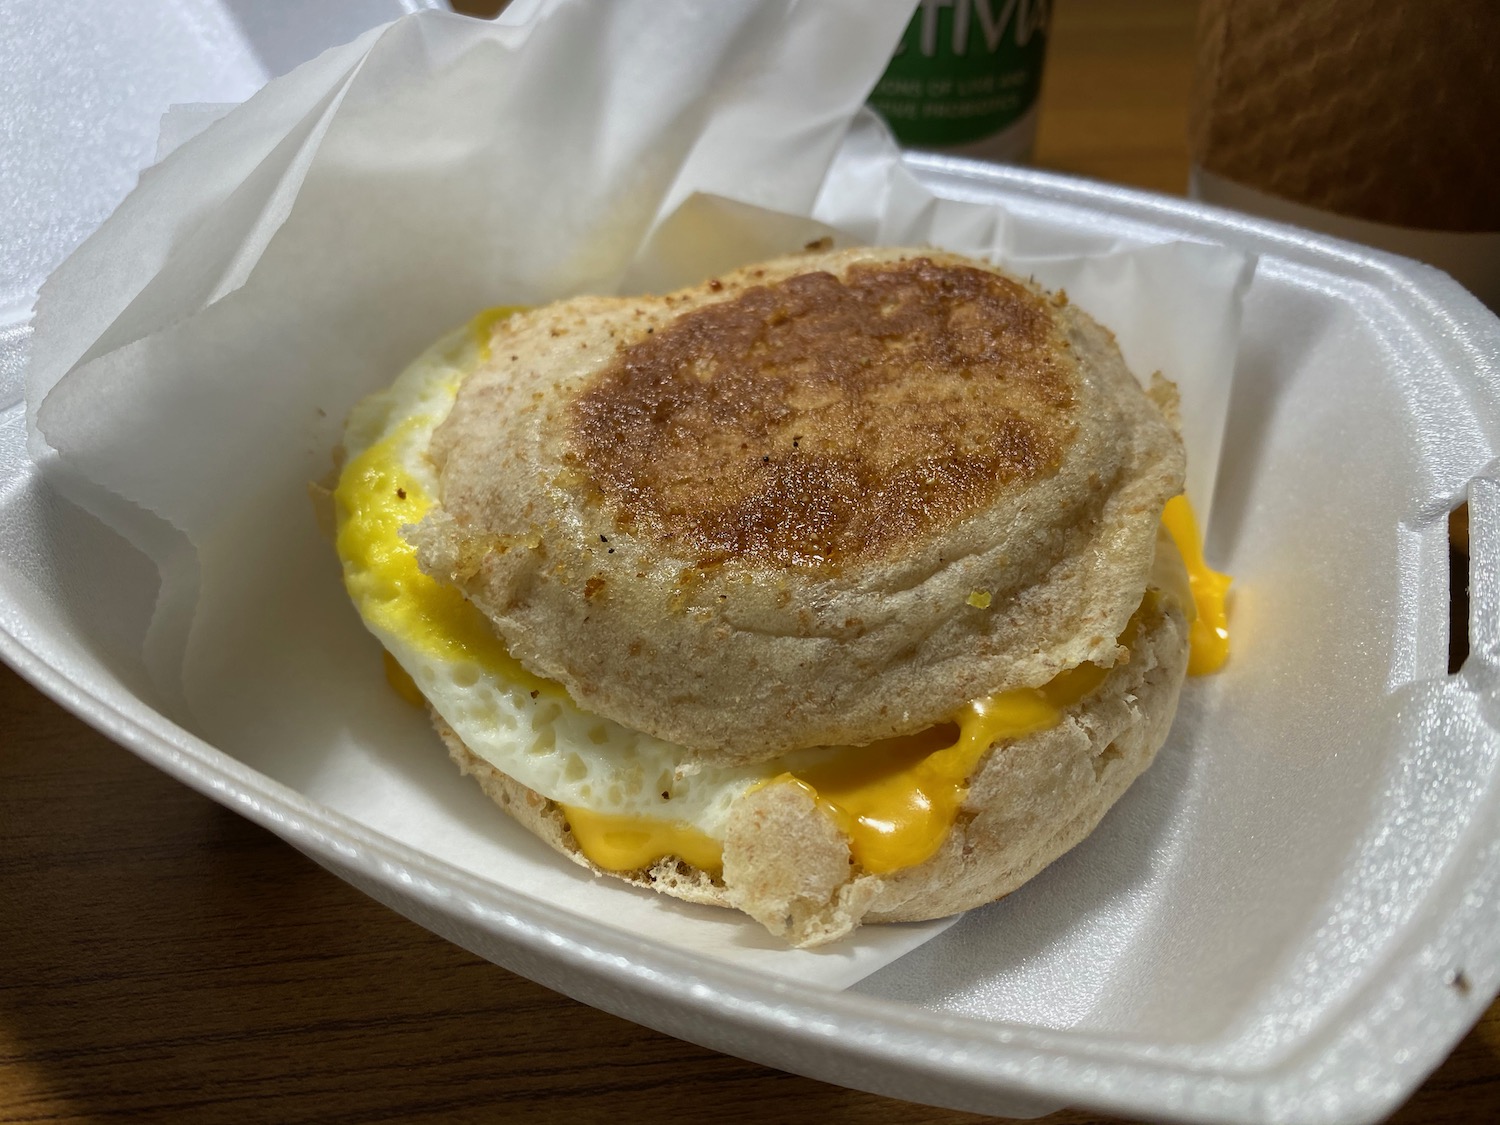 a breakfast sandwich in a styrofoam container